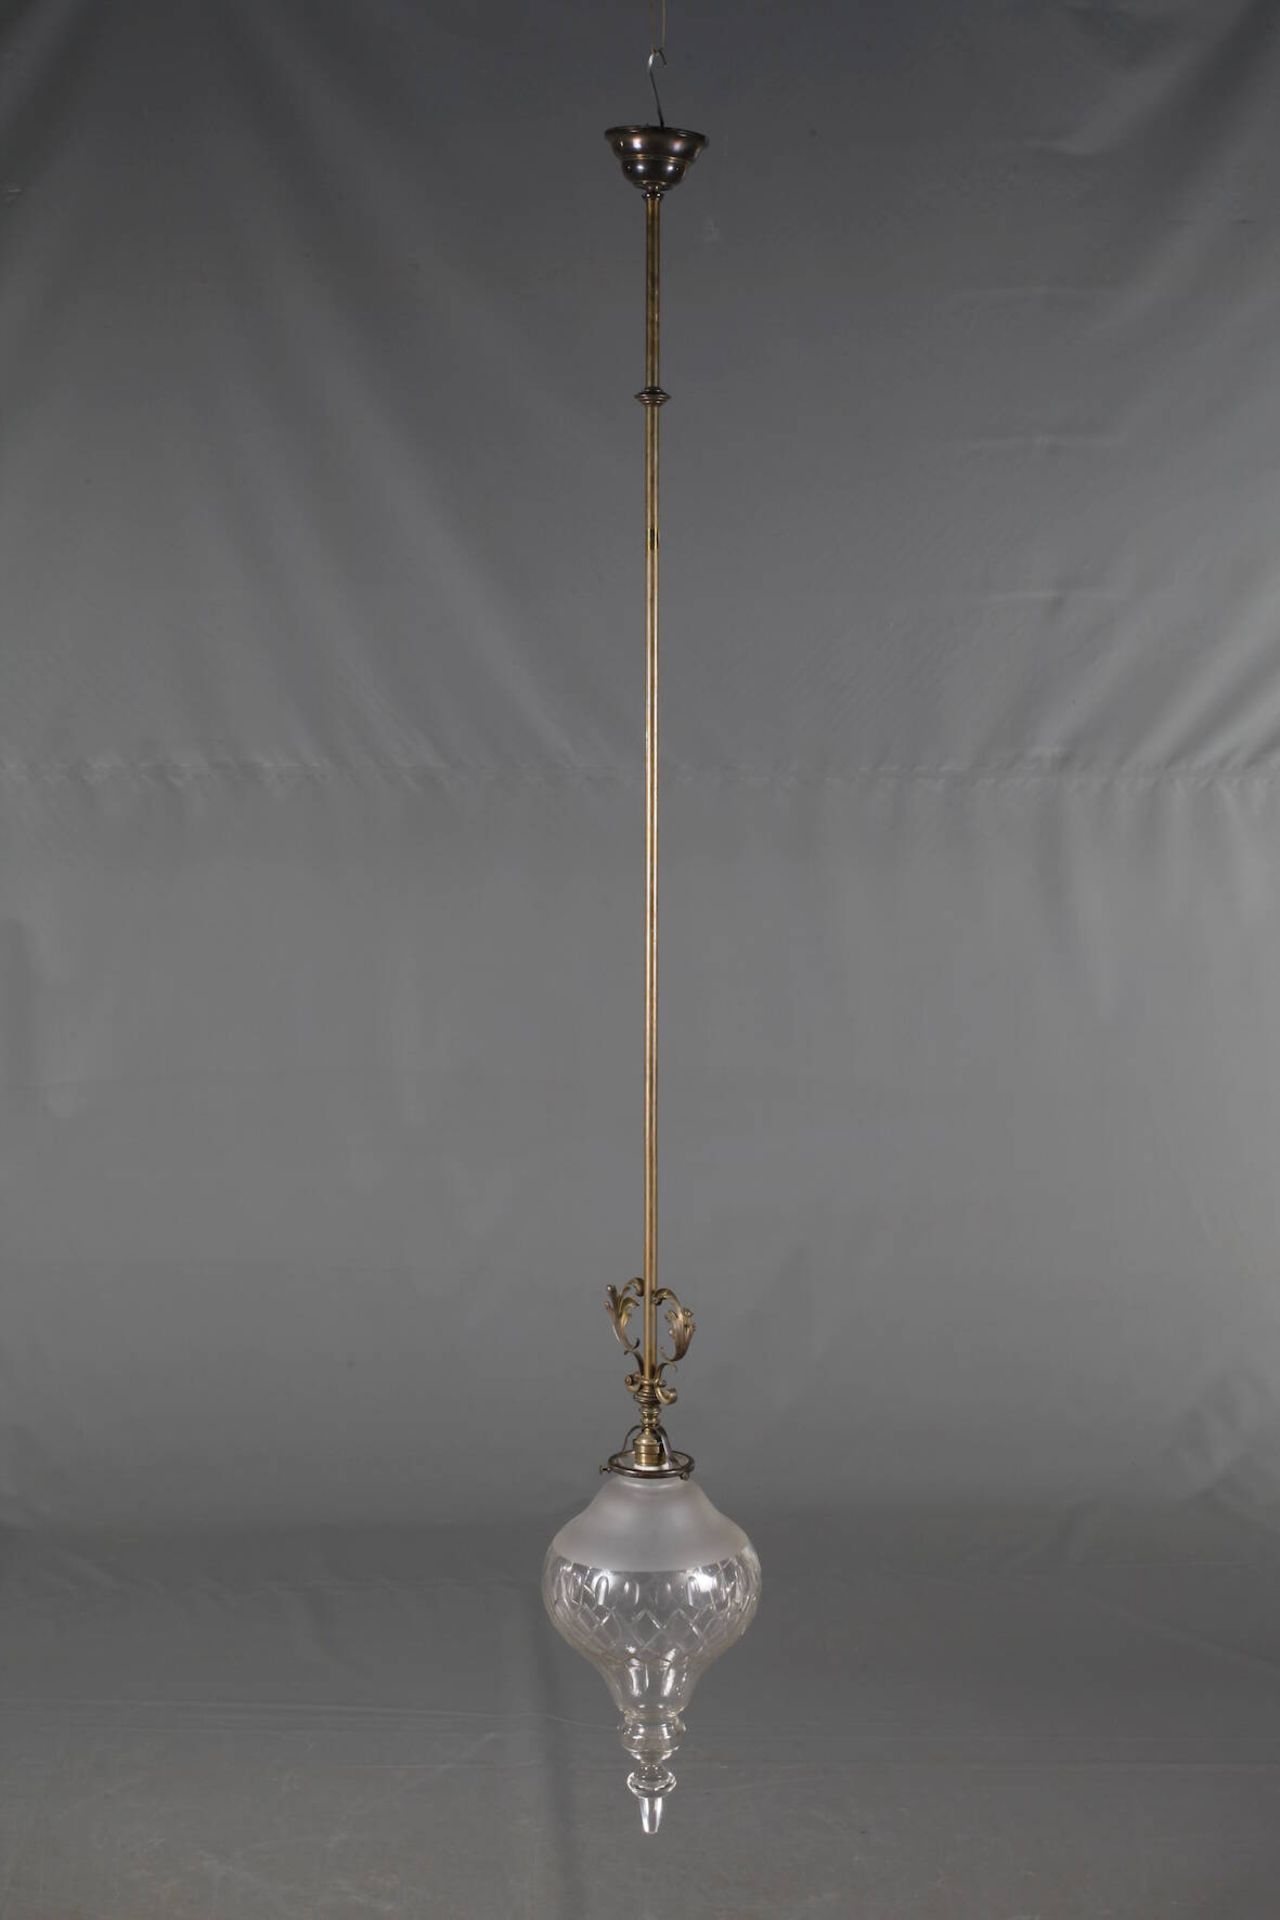 Deckenlampeum 1900, zartes Messinggestänge mit zurückgenommenem Blattdekor, abgehängte Lampenfassung - Image 2 of 4